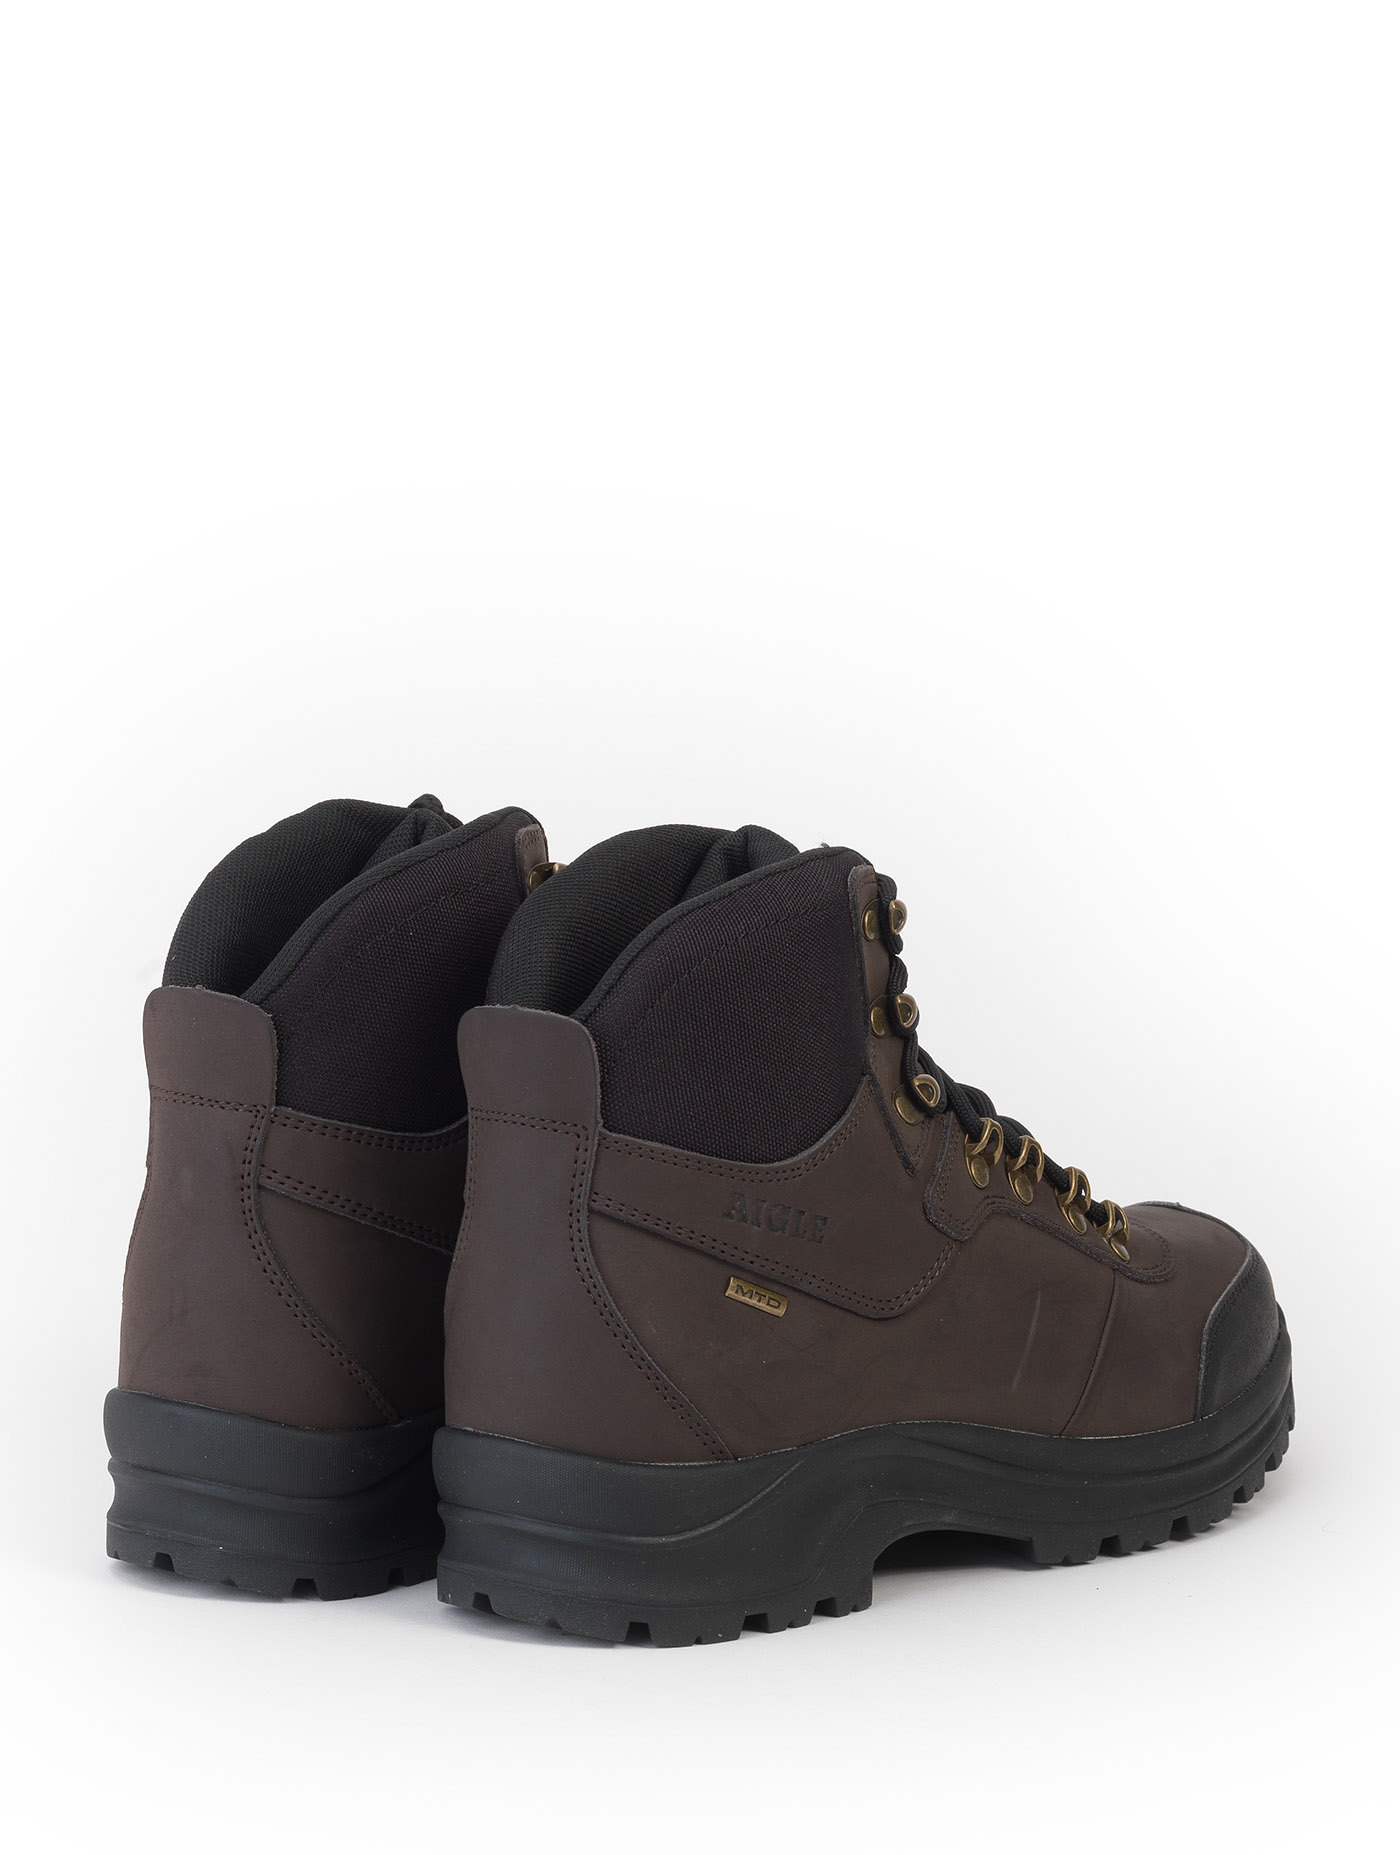 Boots de chasse imperméables ABOND MTD La Redoute Homme Chaussures Bottes Bottes de pluie 